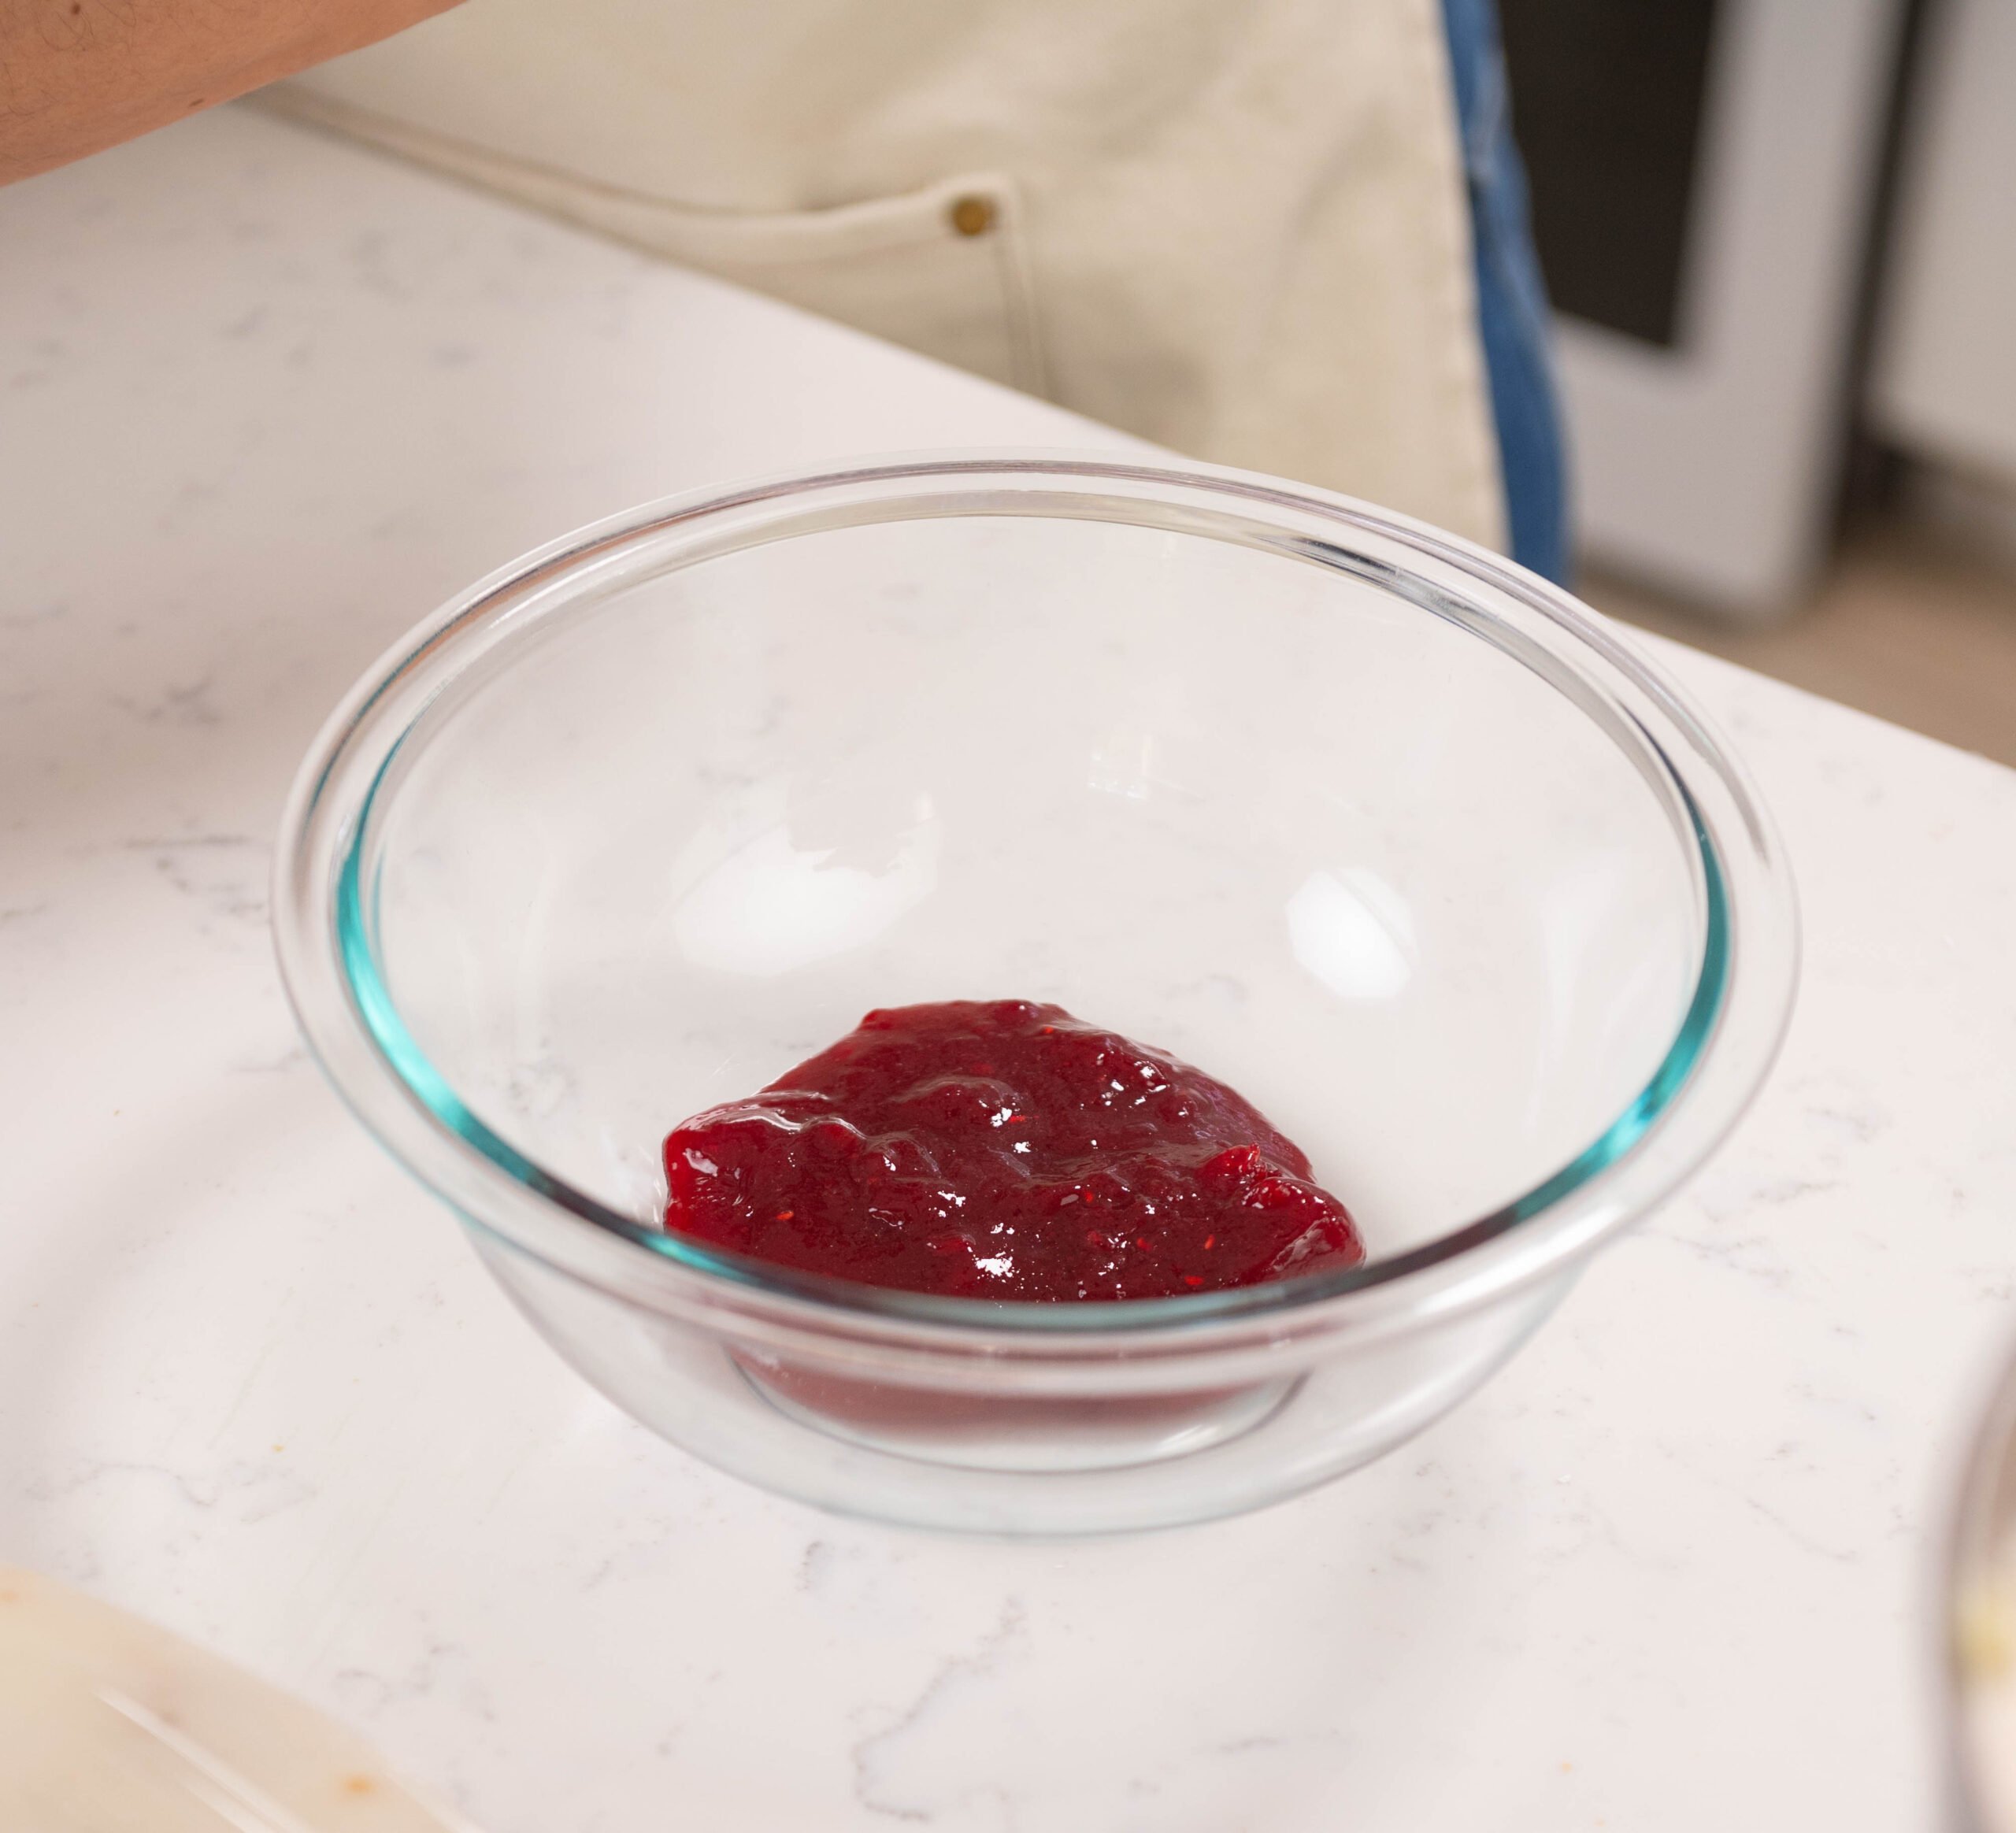 raspberry filling inside bowl